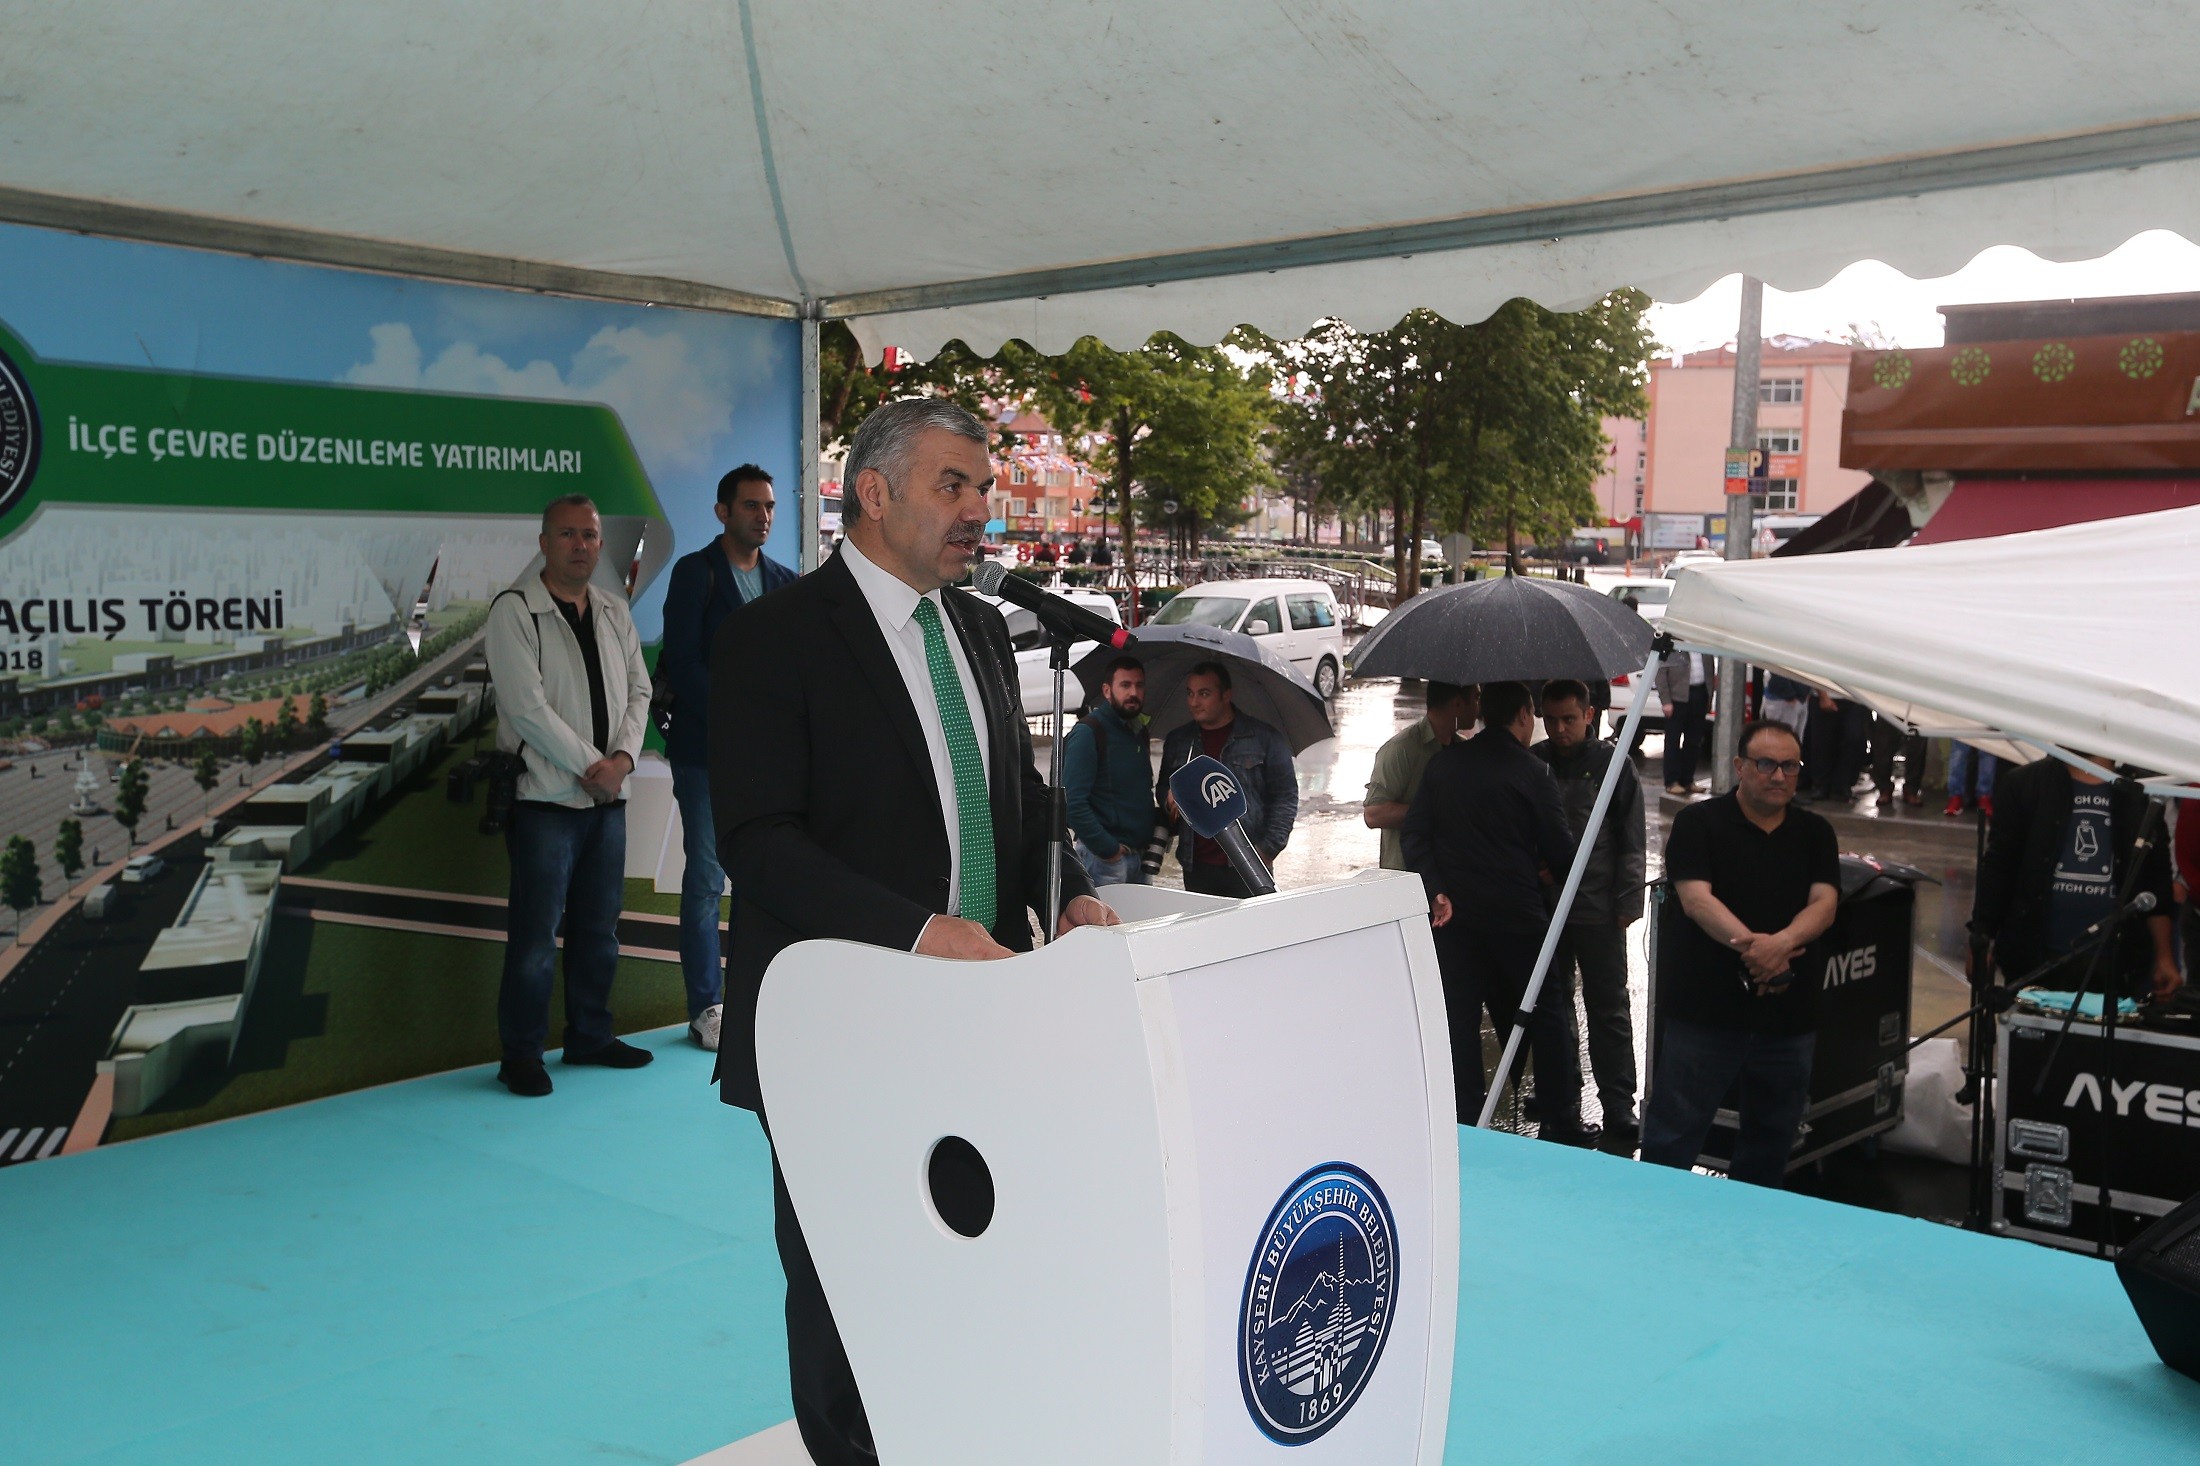 Başkan Çelik, “2014 yılından itibaren Yahyalı’ya 52 milyon TL’lik yatırım yapıldı”